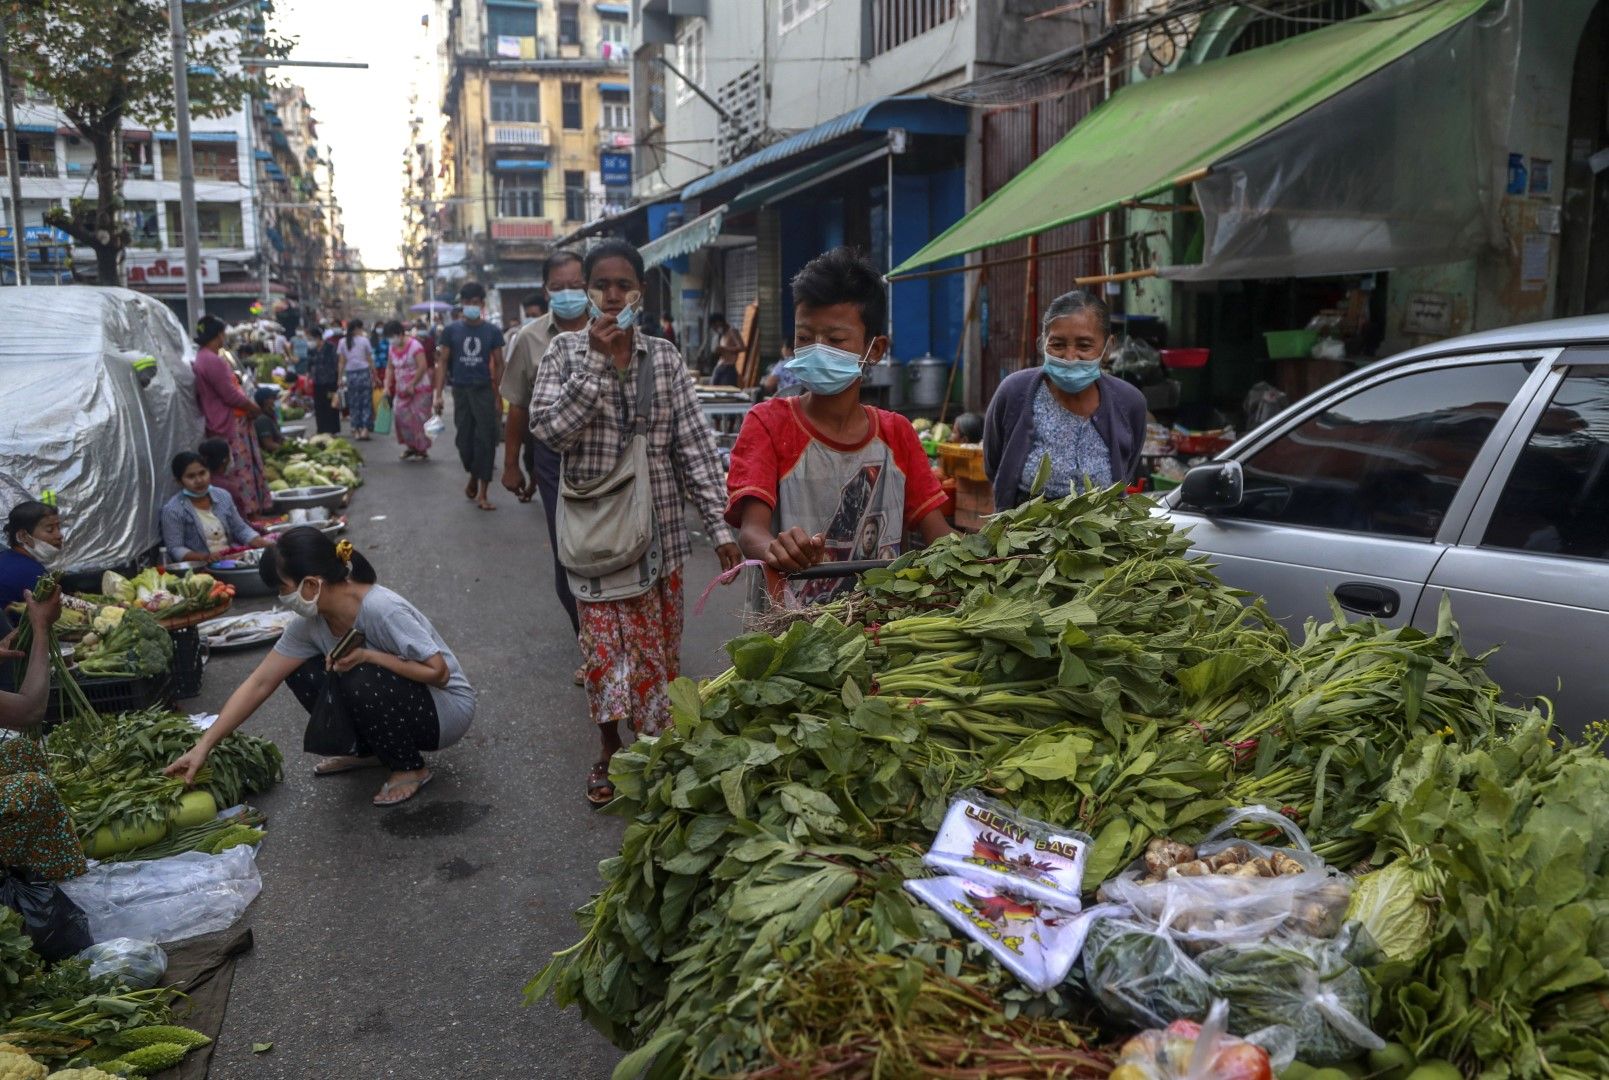 Уличен пазар в Янгон, Мианмар - 2 фверуари 2021 г. - ден след военния преврат